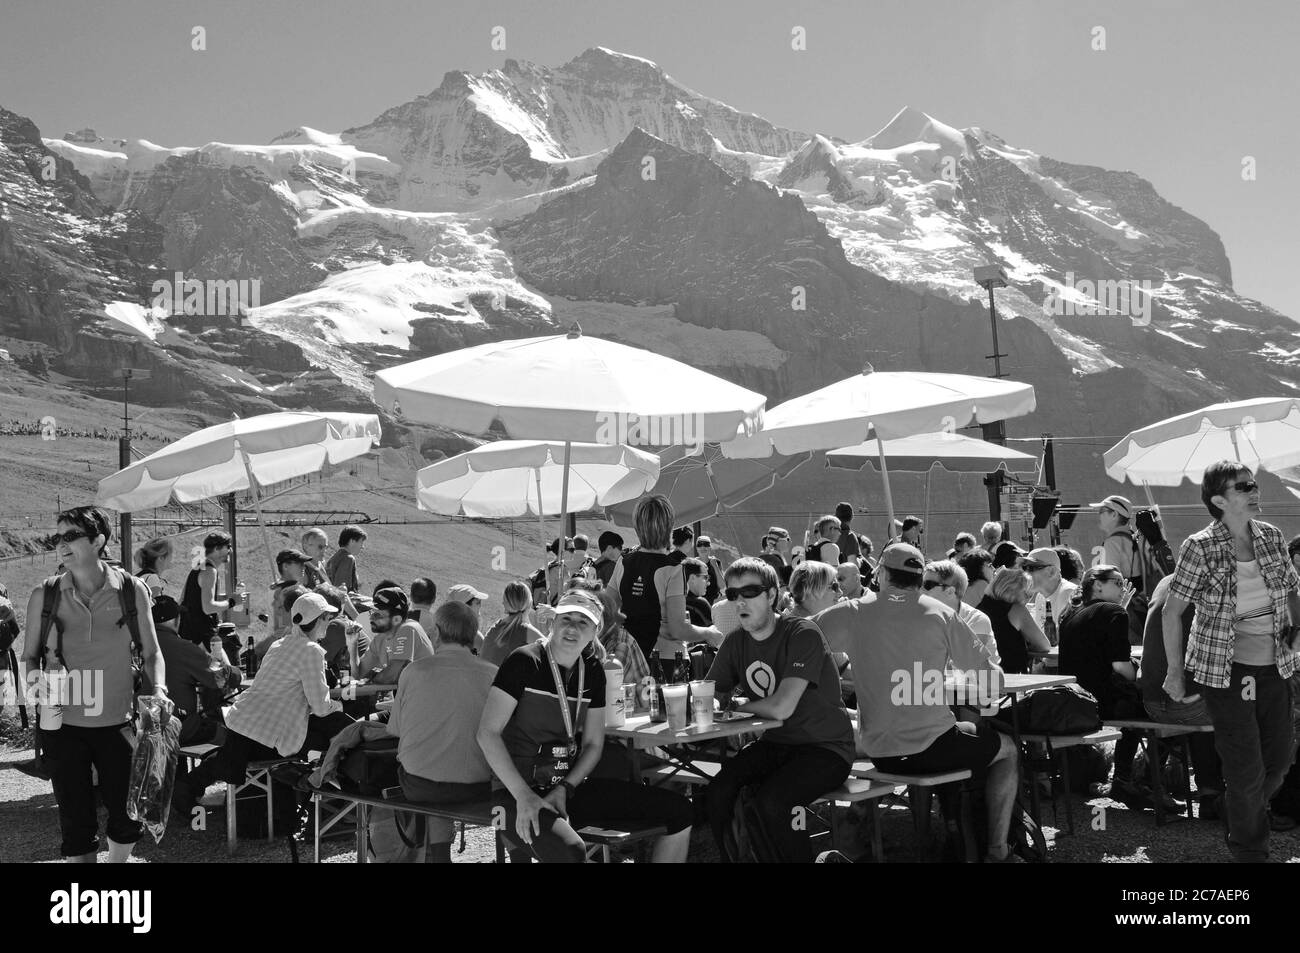 Touristen und Sportler verpflegen sich auf der KleineScheidegg am Fusse von Eiger, Mönch und Jungfrau am Jungfraujoch-Marathon | Tourists at the Klein Stock Photo